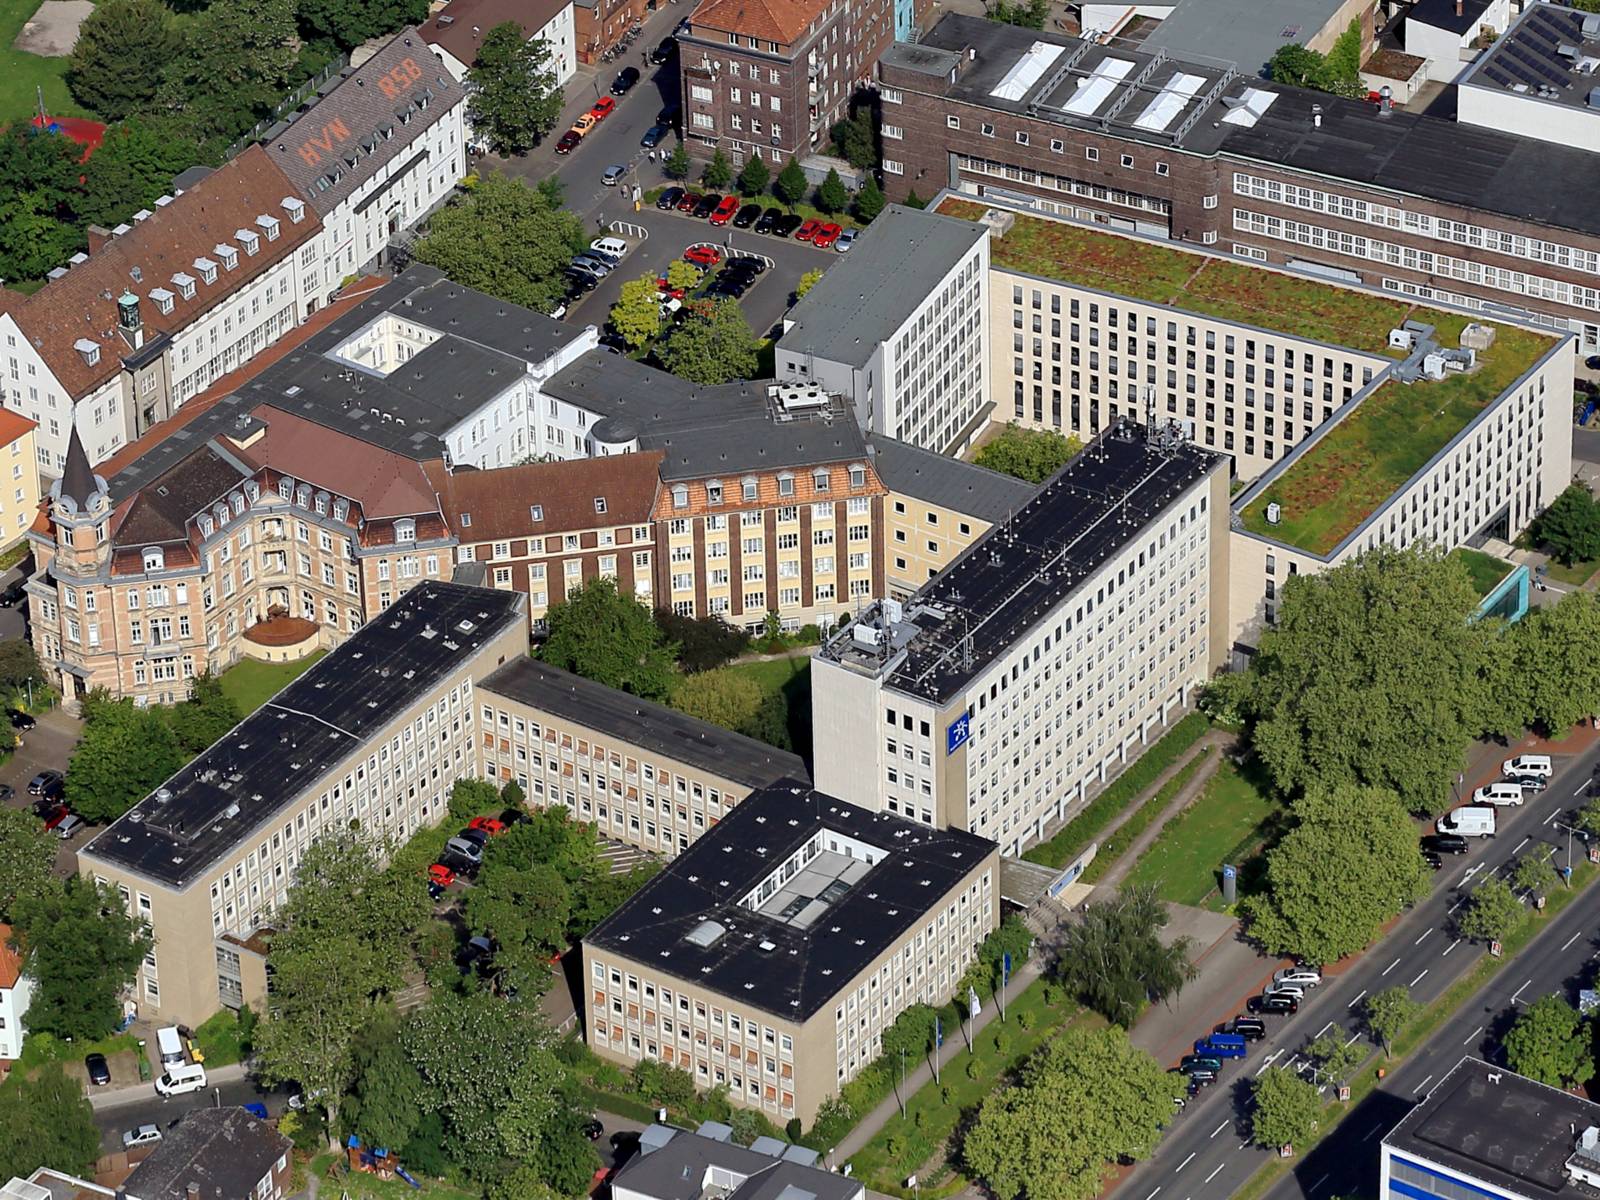 Blick auf das Haus der Region Hannover zwischen Hildesheimer Straße und Maschstraße und auf Gebäude in der Umgebung.